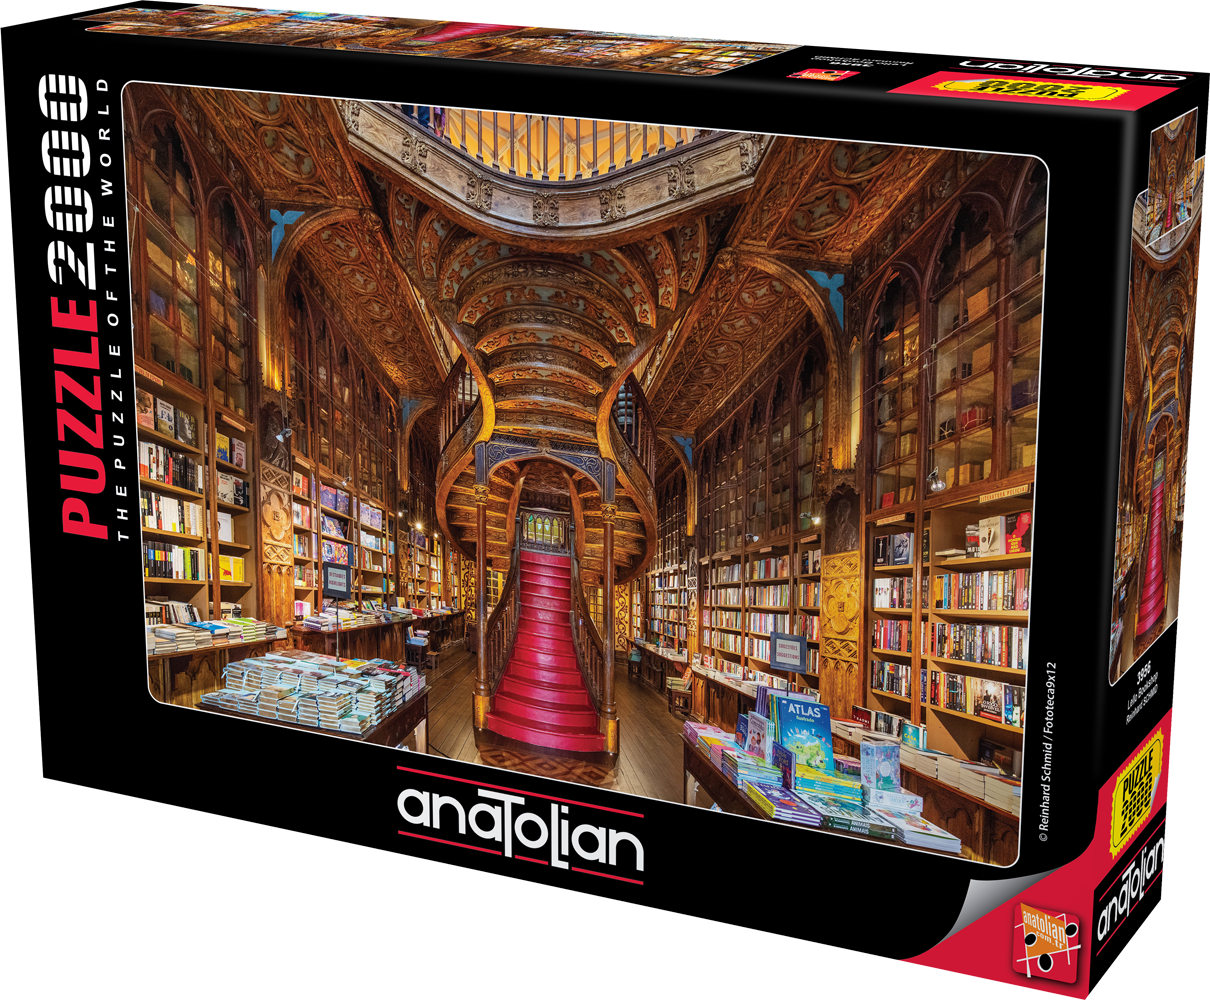 Comprar Anatolian Puzzle Roll guarda puzzle 9003